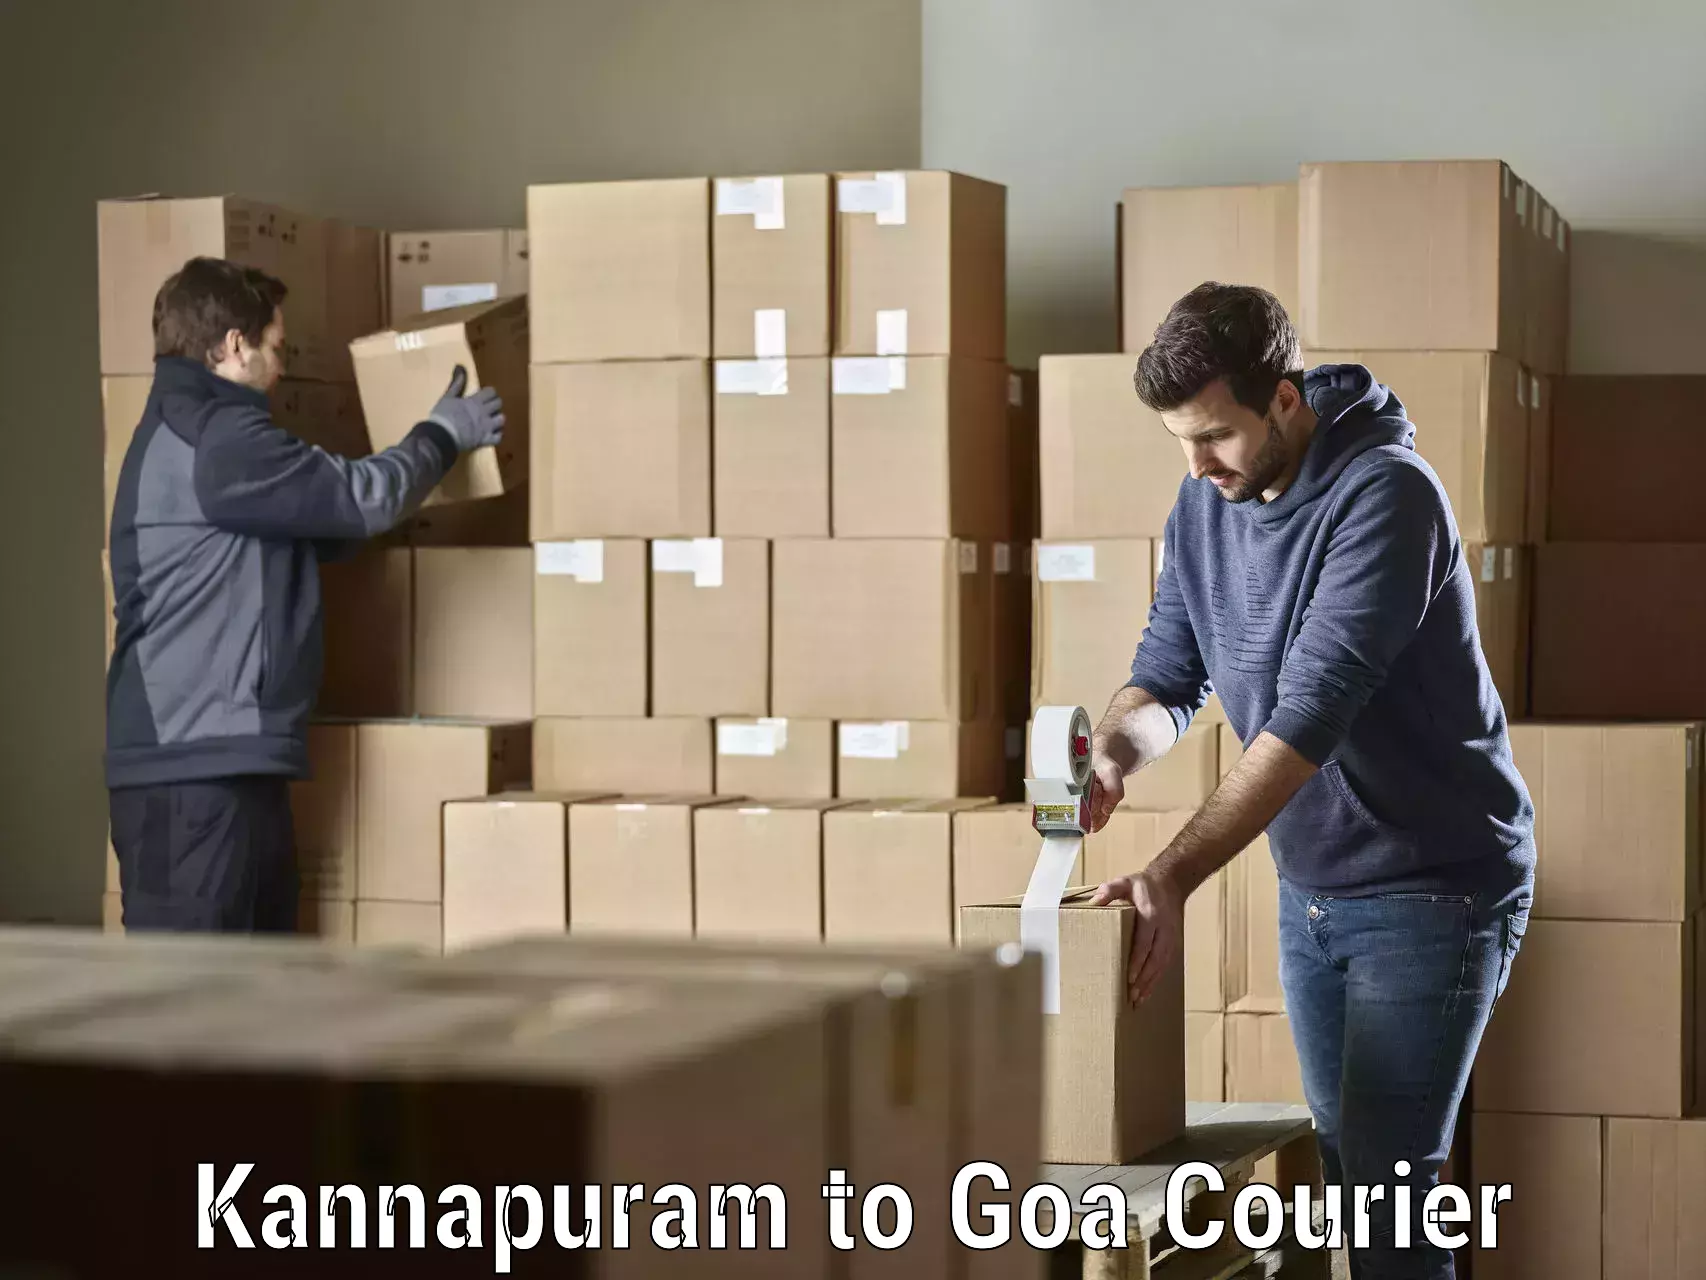 User-friendly courier app Kannapuram to Goa